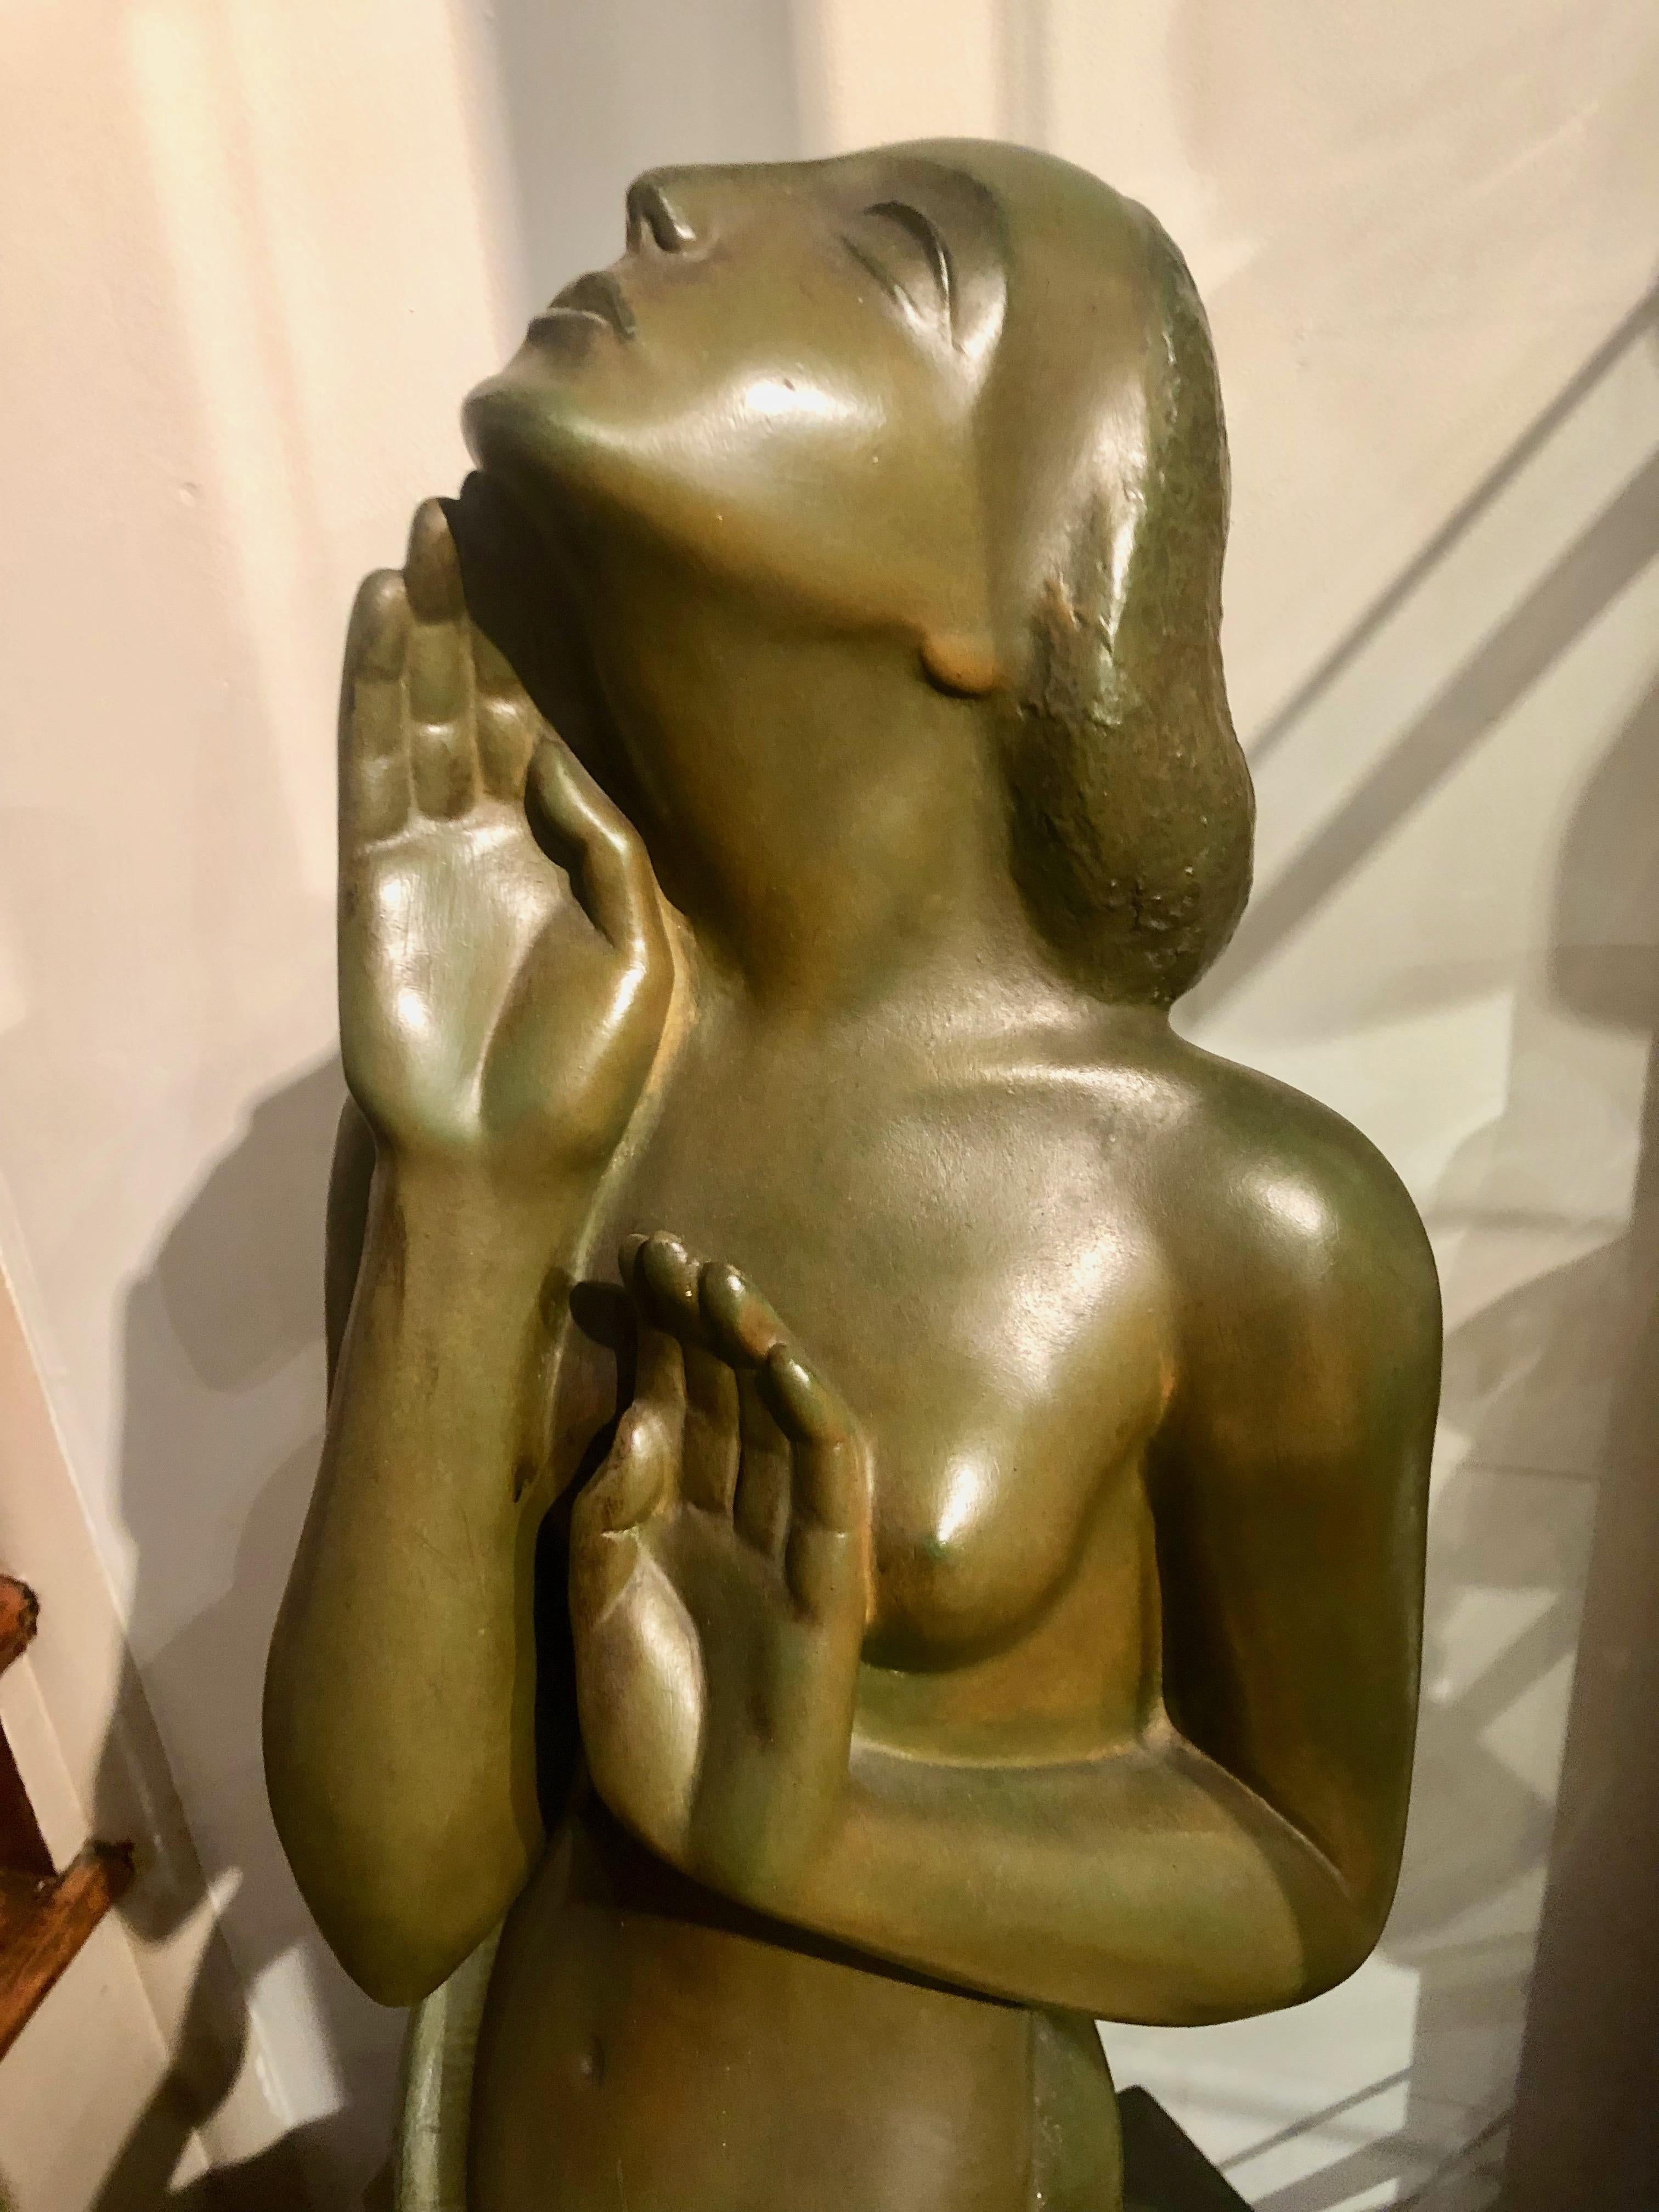 Sculpture féminine Art déco en bronze de l'important artiste belge Jan Anteunis, qui a travaillé principalement dans la ville de Gand. Une grande et spectaculaire sculpture qui présente une femme stylisée très détaillée et inhabituelle, simplement